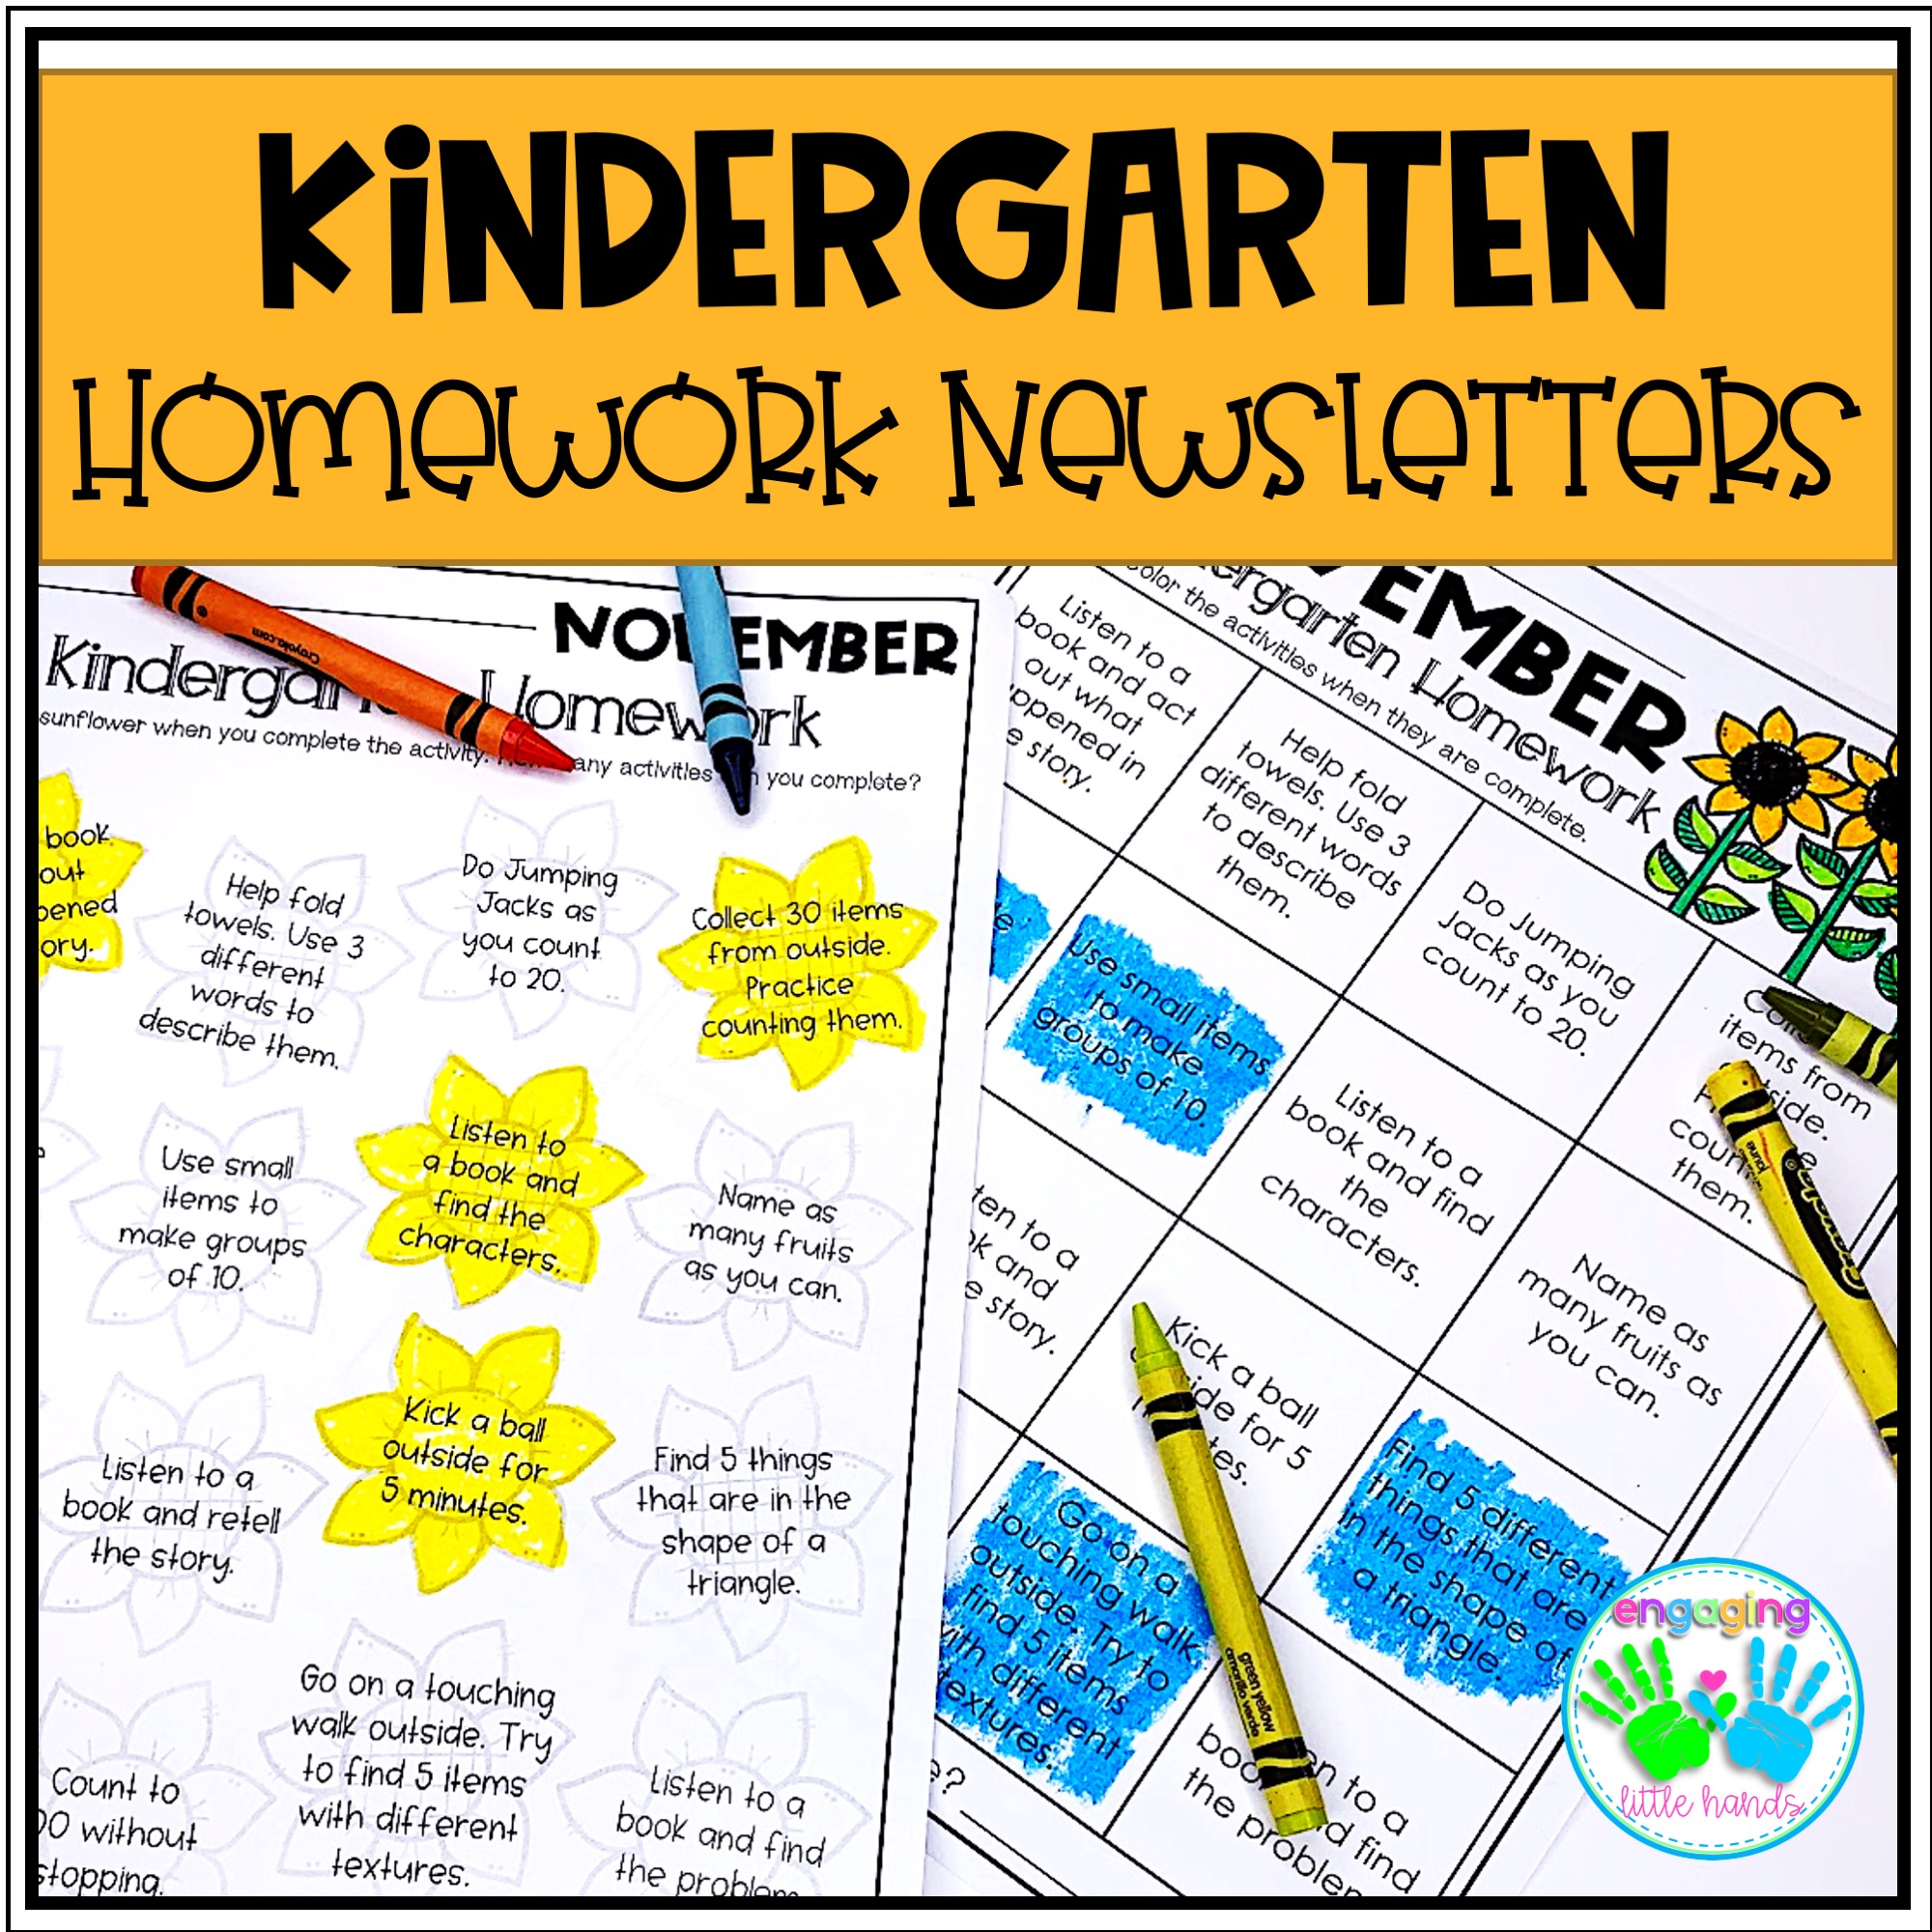 Kindergarten Homework Newsletters